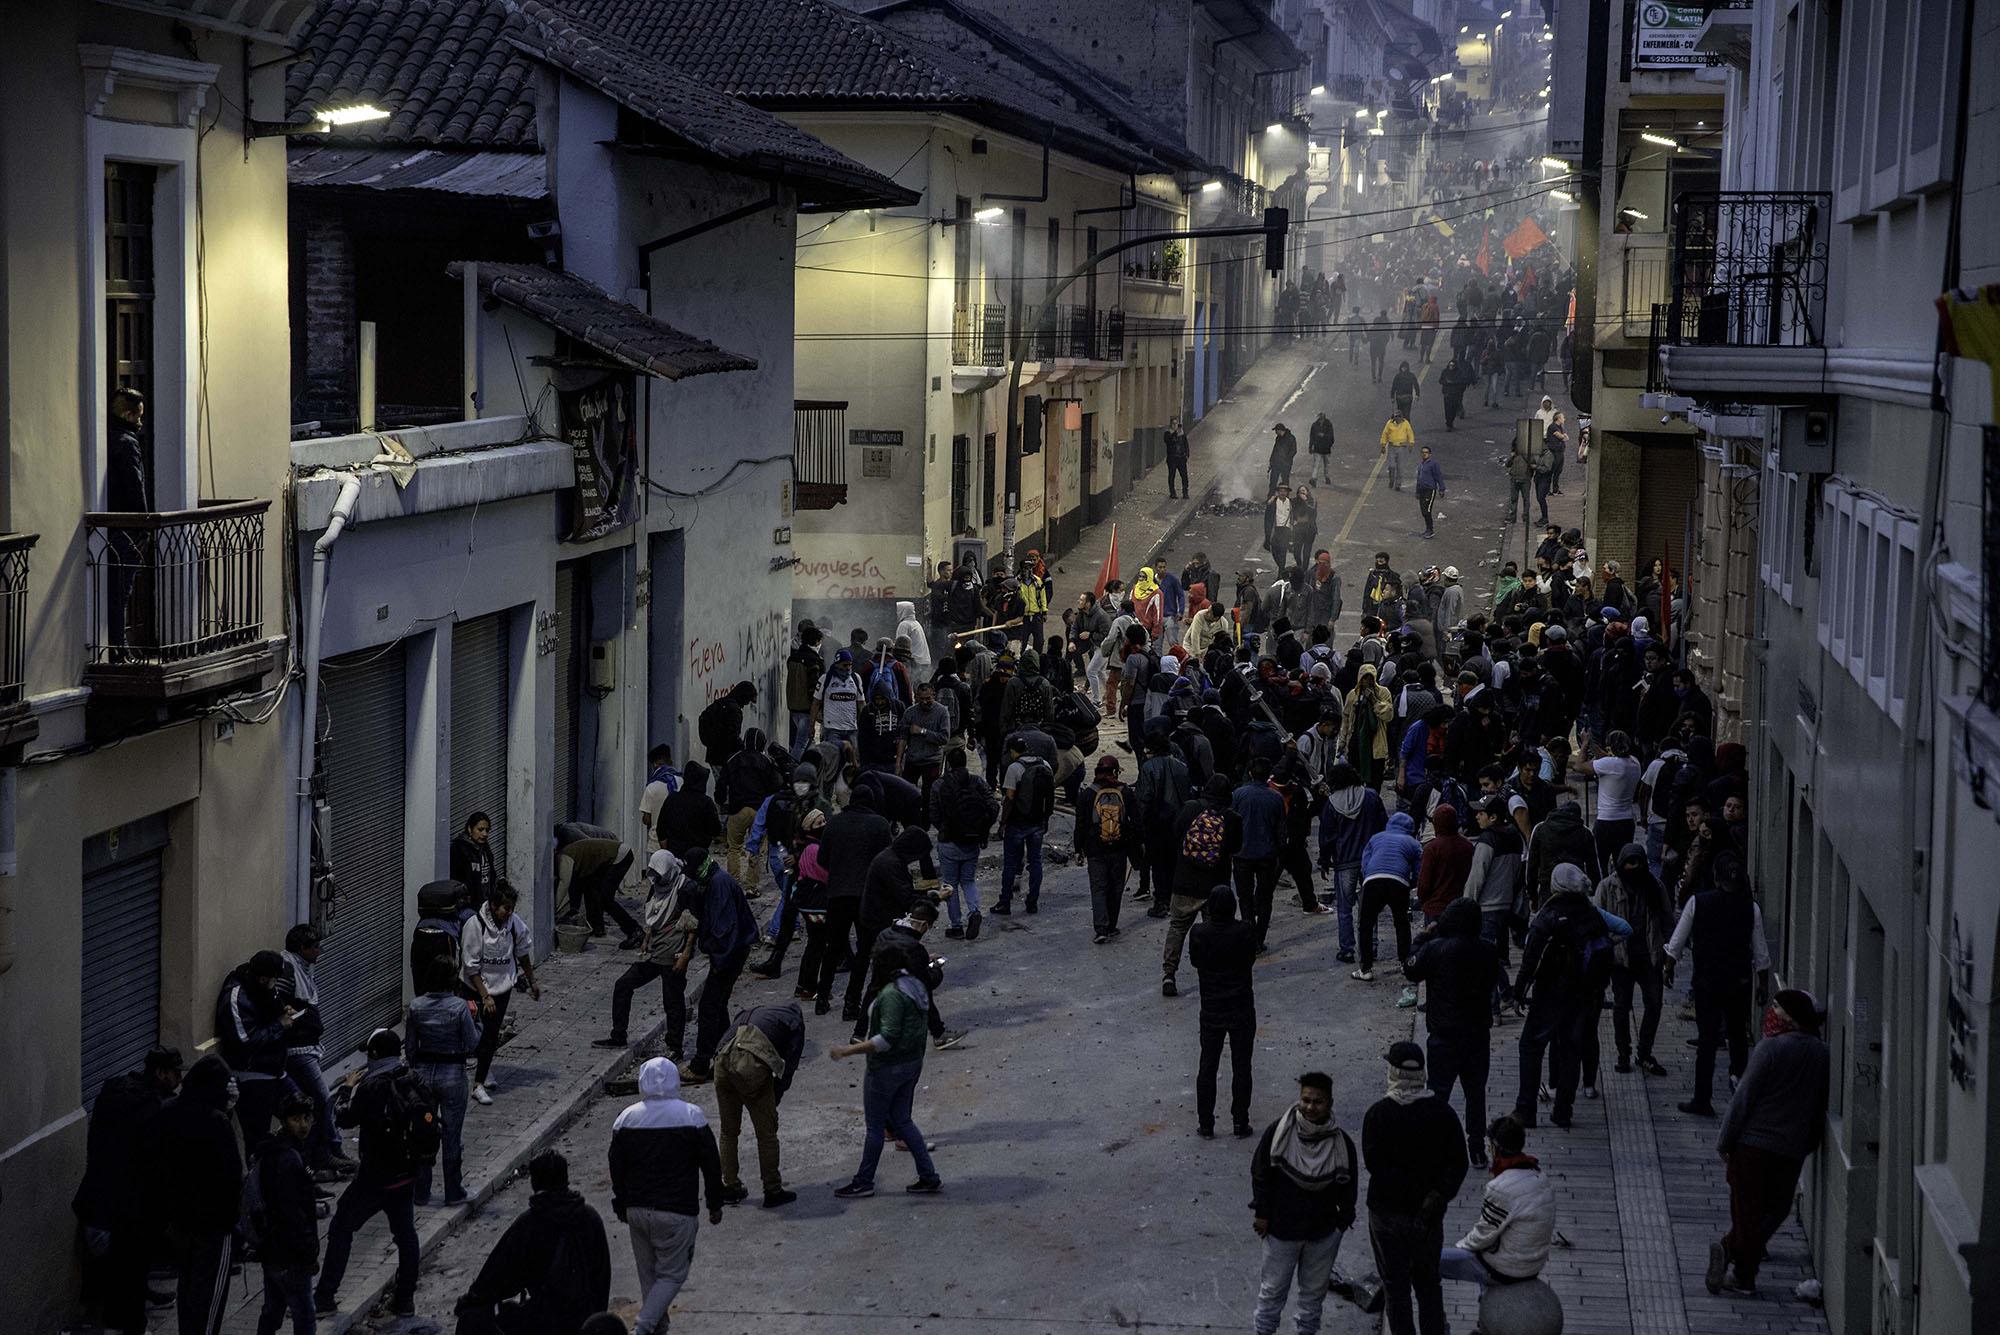 Bloomberg: Ecuador Unrest - 